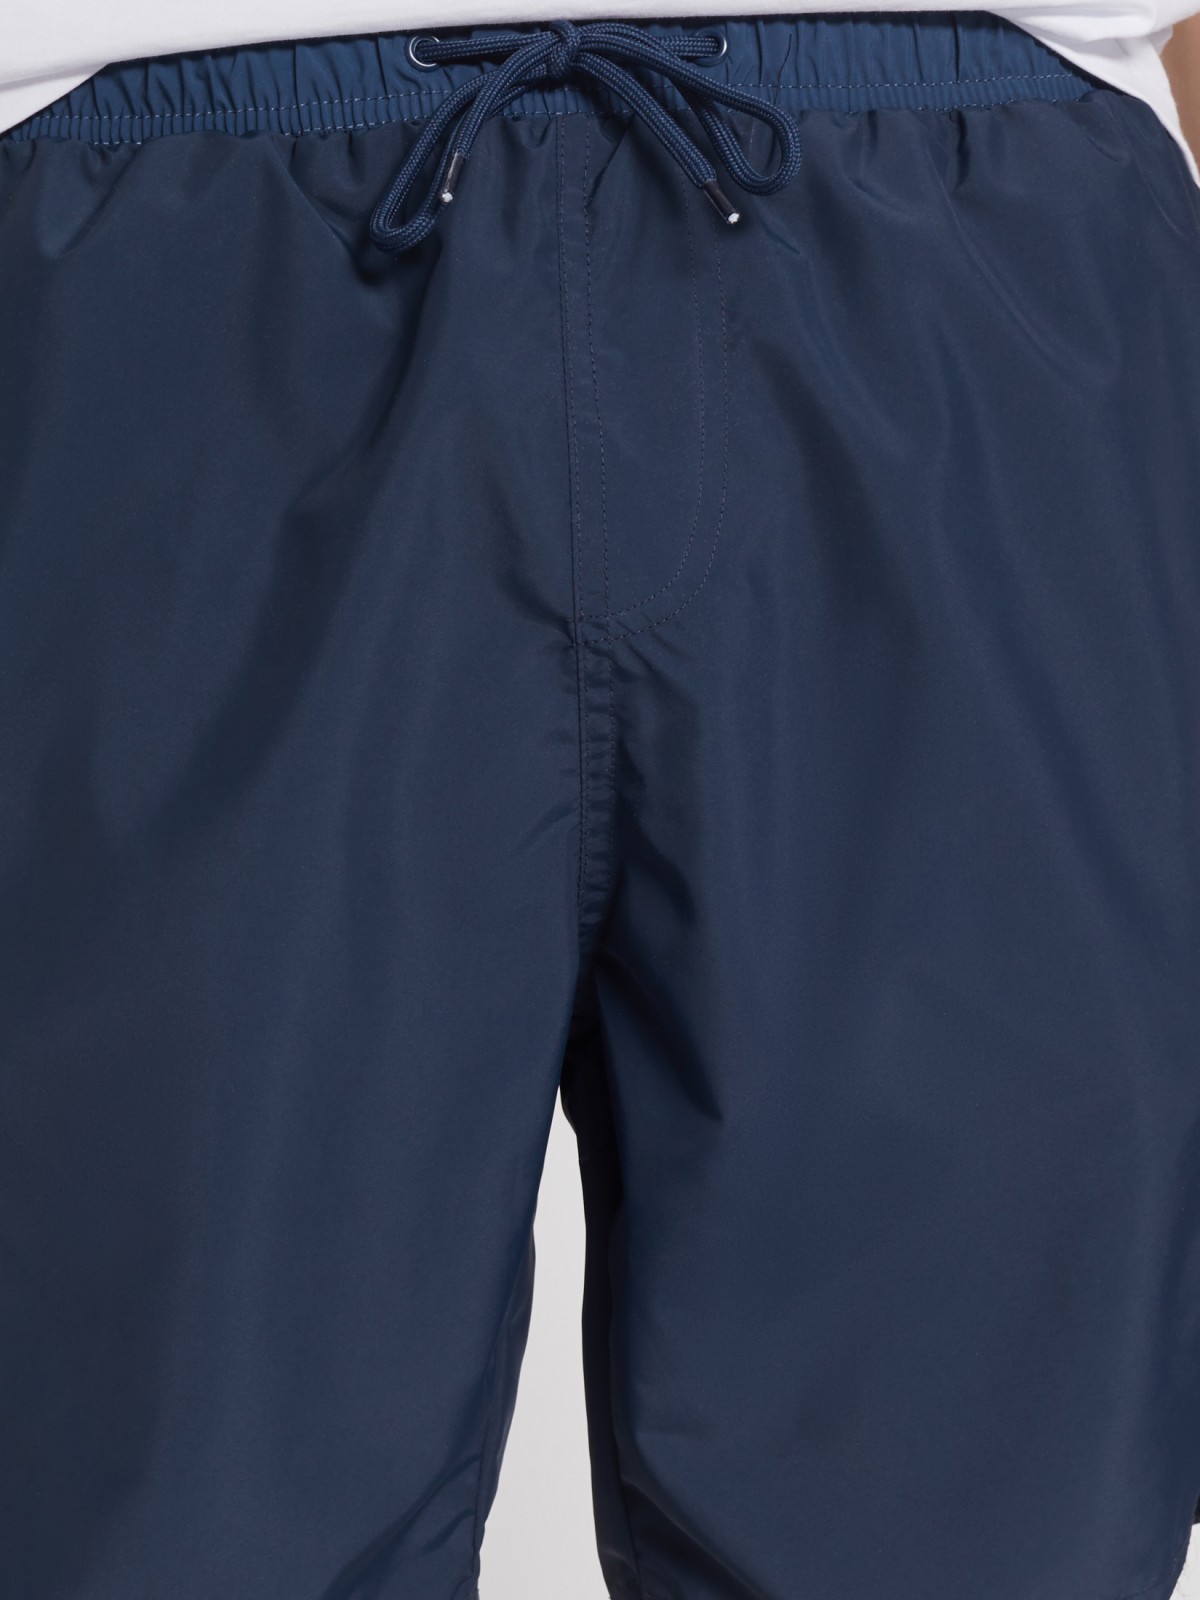 Плавательные шорты zolla 212257S59032, цвет синий, размер S - фото 5